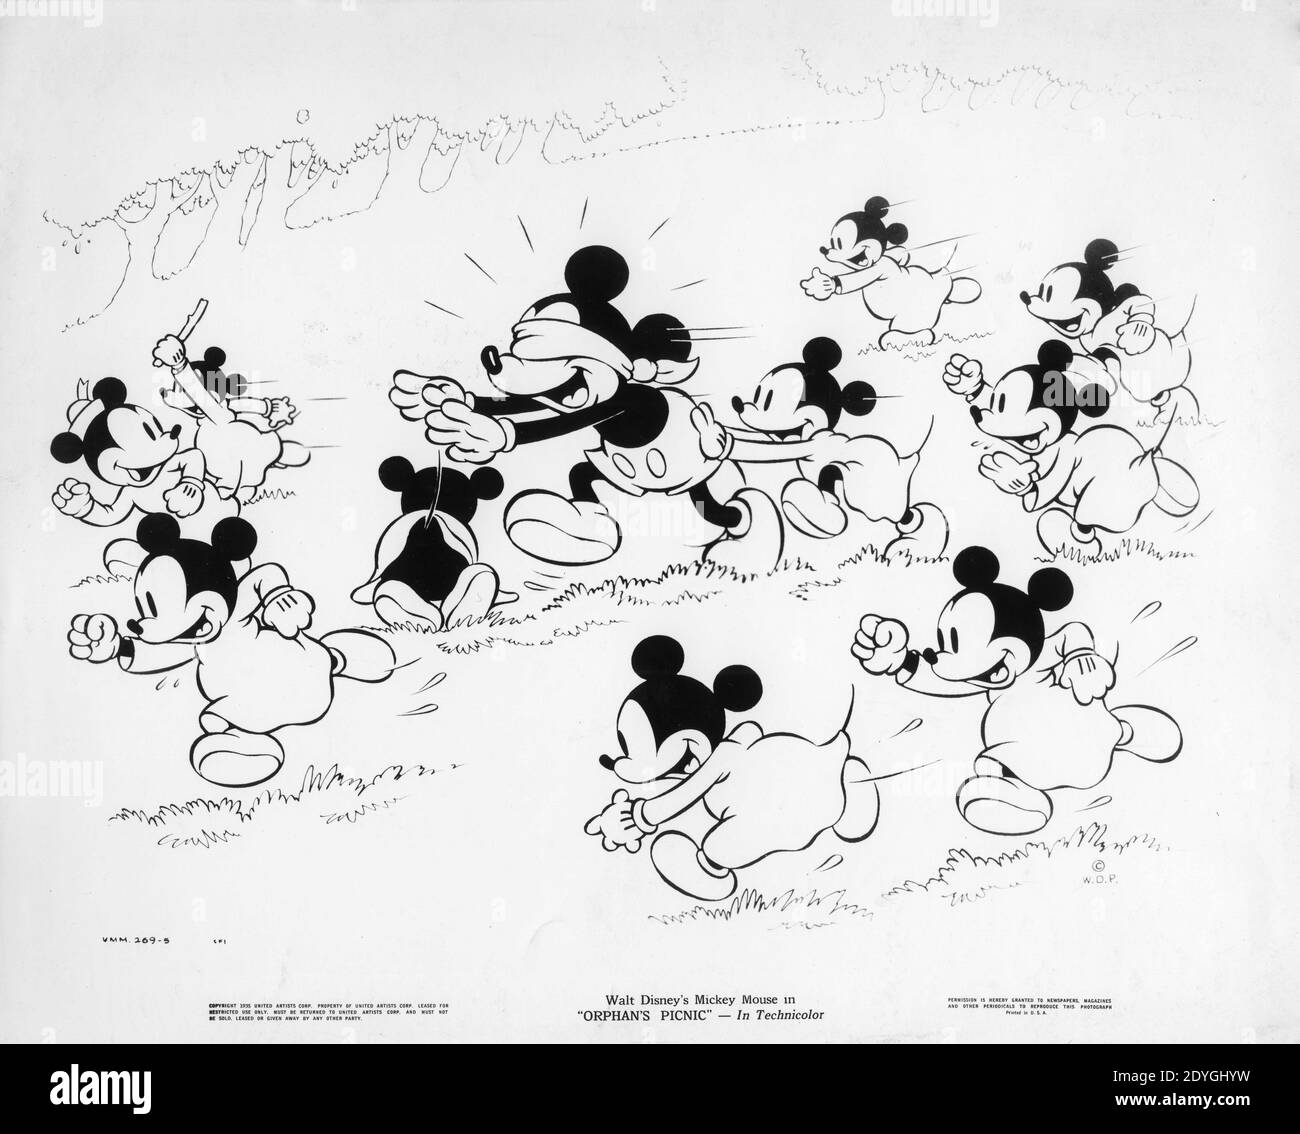 EL RATÓN MICKEY DE WALT DISNEY juega a Blind Man's Buff / Bluff Con ratón  niños en EL PICNIC DE HUÉRFANOS 1936 director BEN SHARPSTEEN Walt Disney  Productions / Artistas Unidos Fotografía